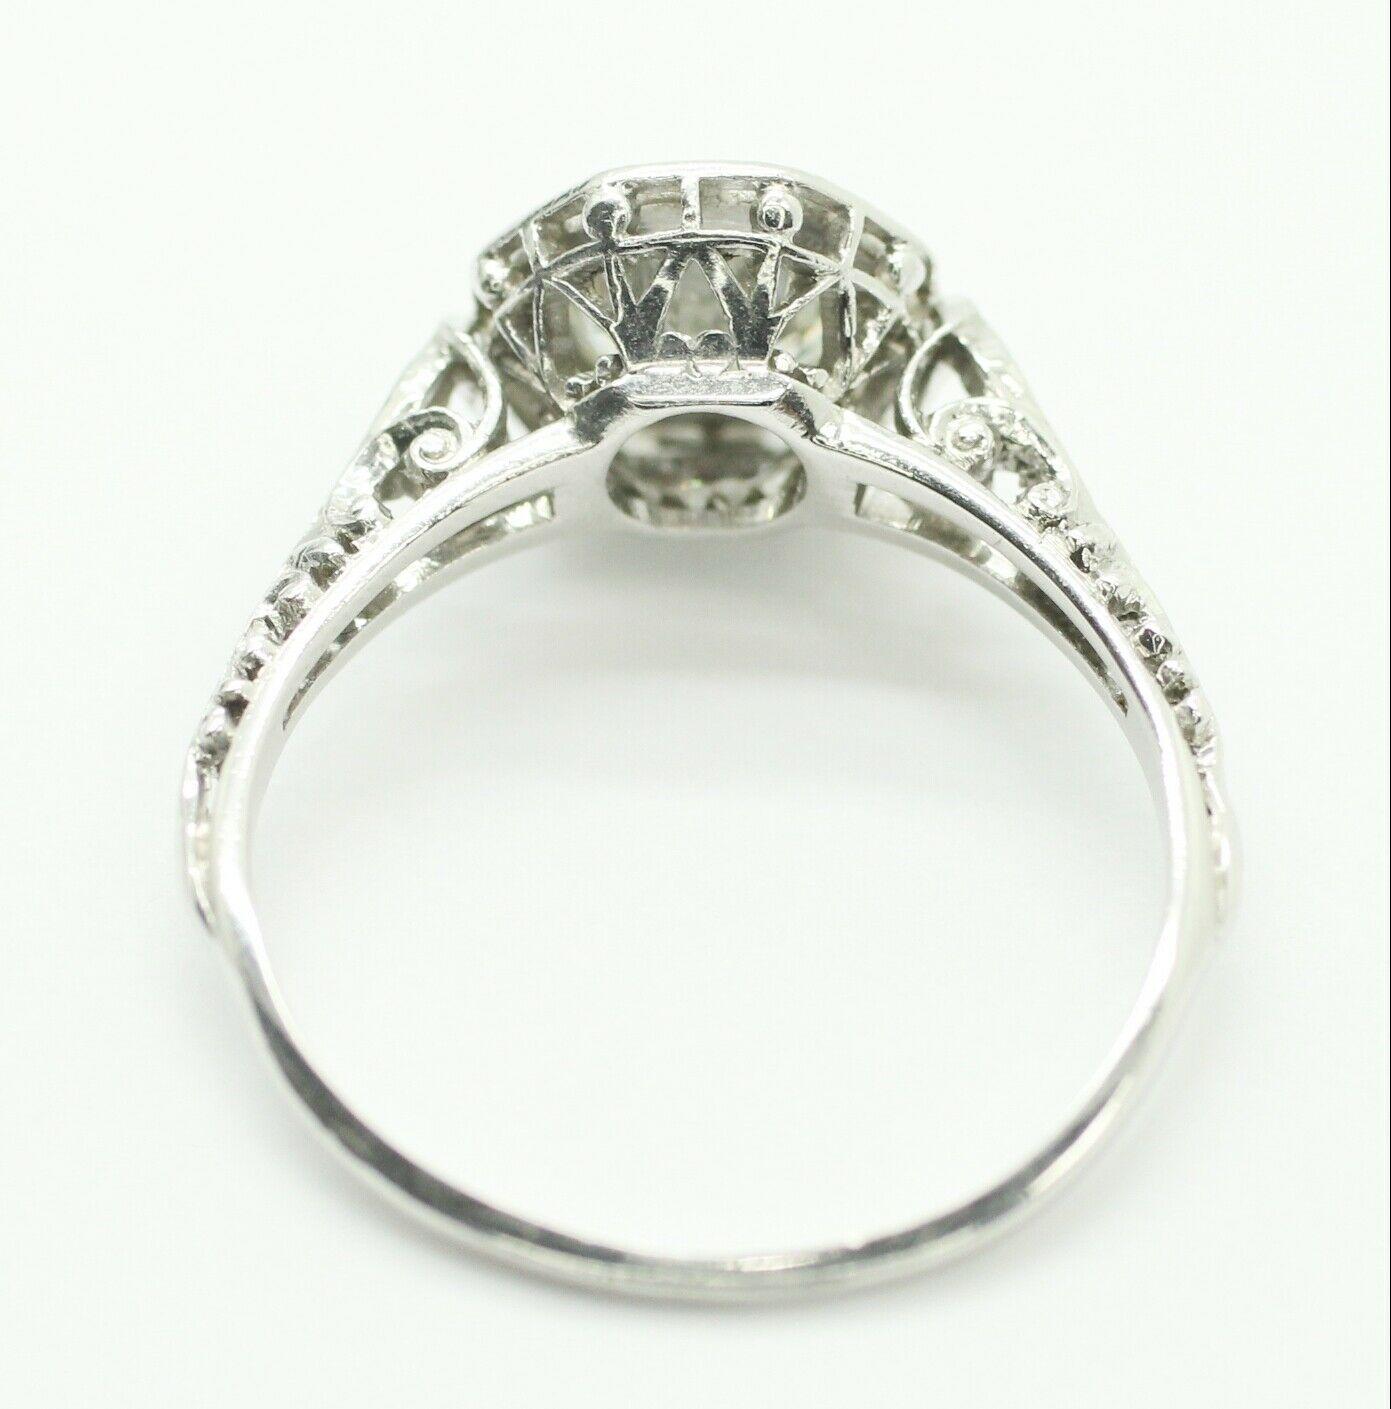 1 carat diamond on size 9 finger